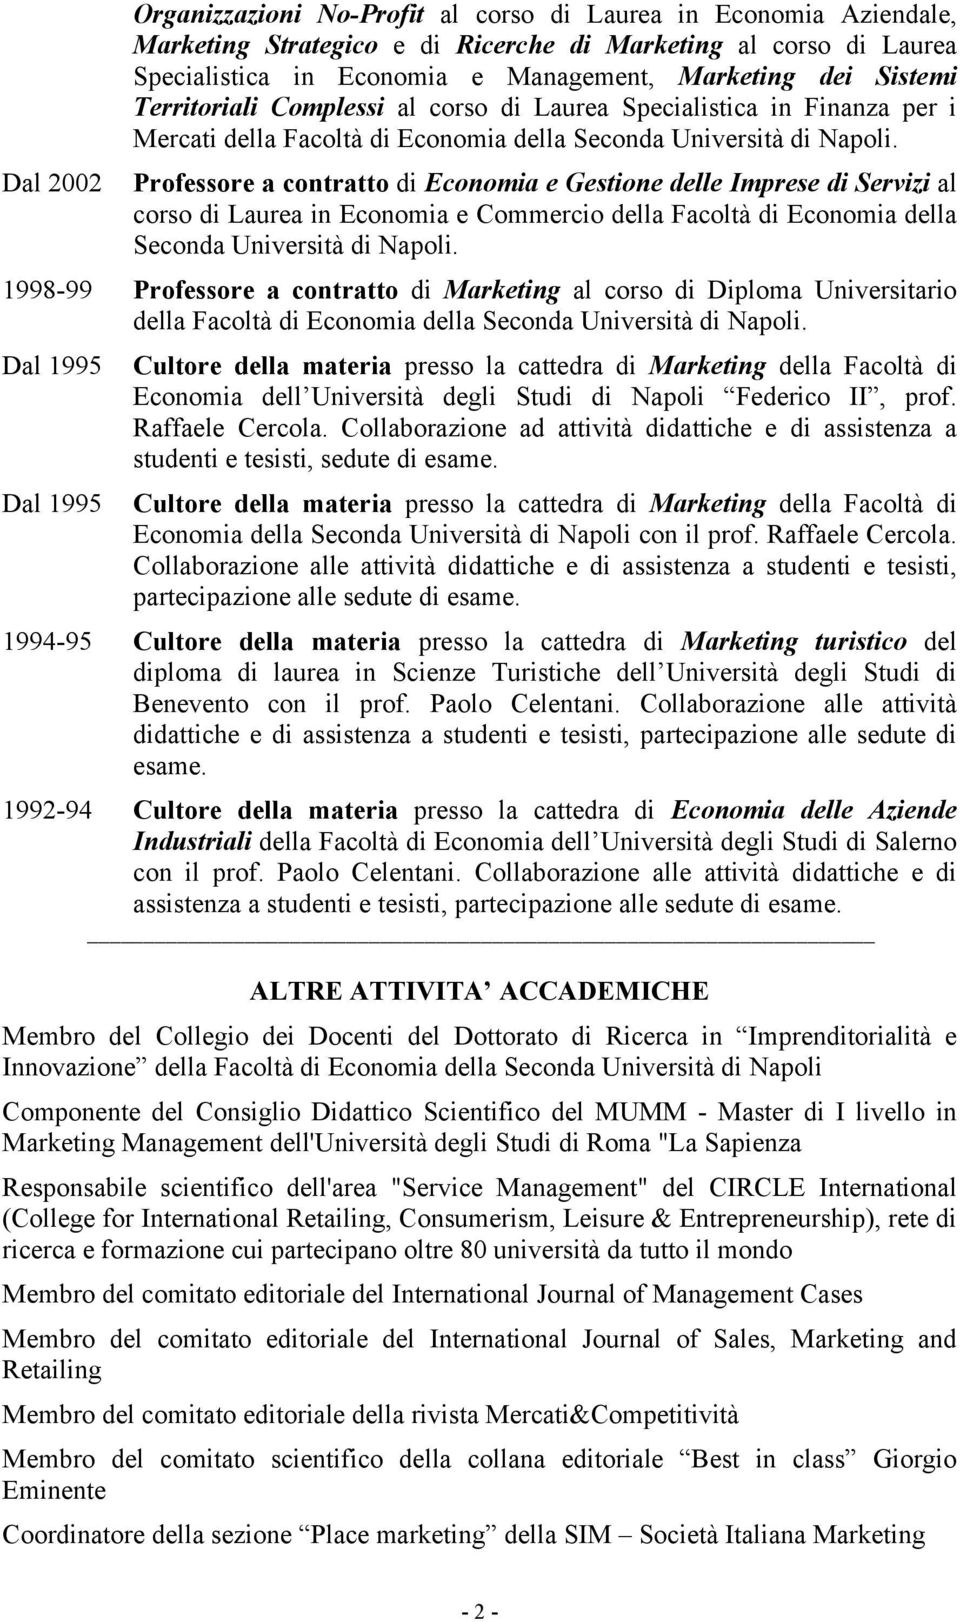 Professore a contratto di Economia e Gestione delle Imprese di Servizi al corso di Laurea in Economia e Commercio della Facoltà di Economia della Seconda Università di Napoli.